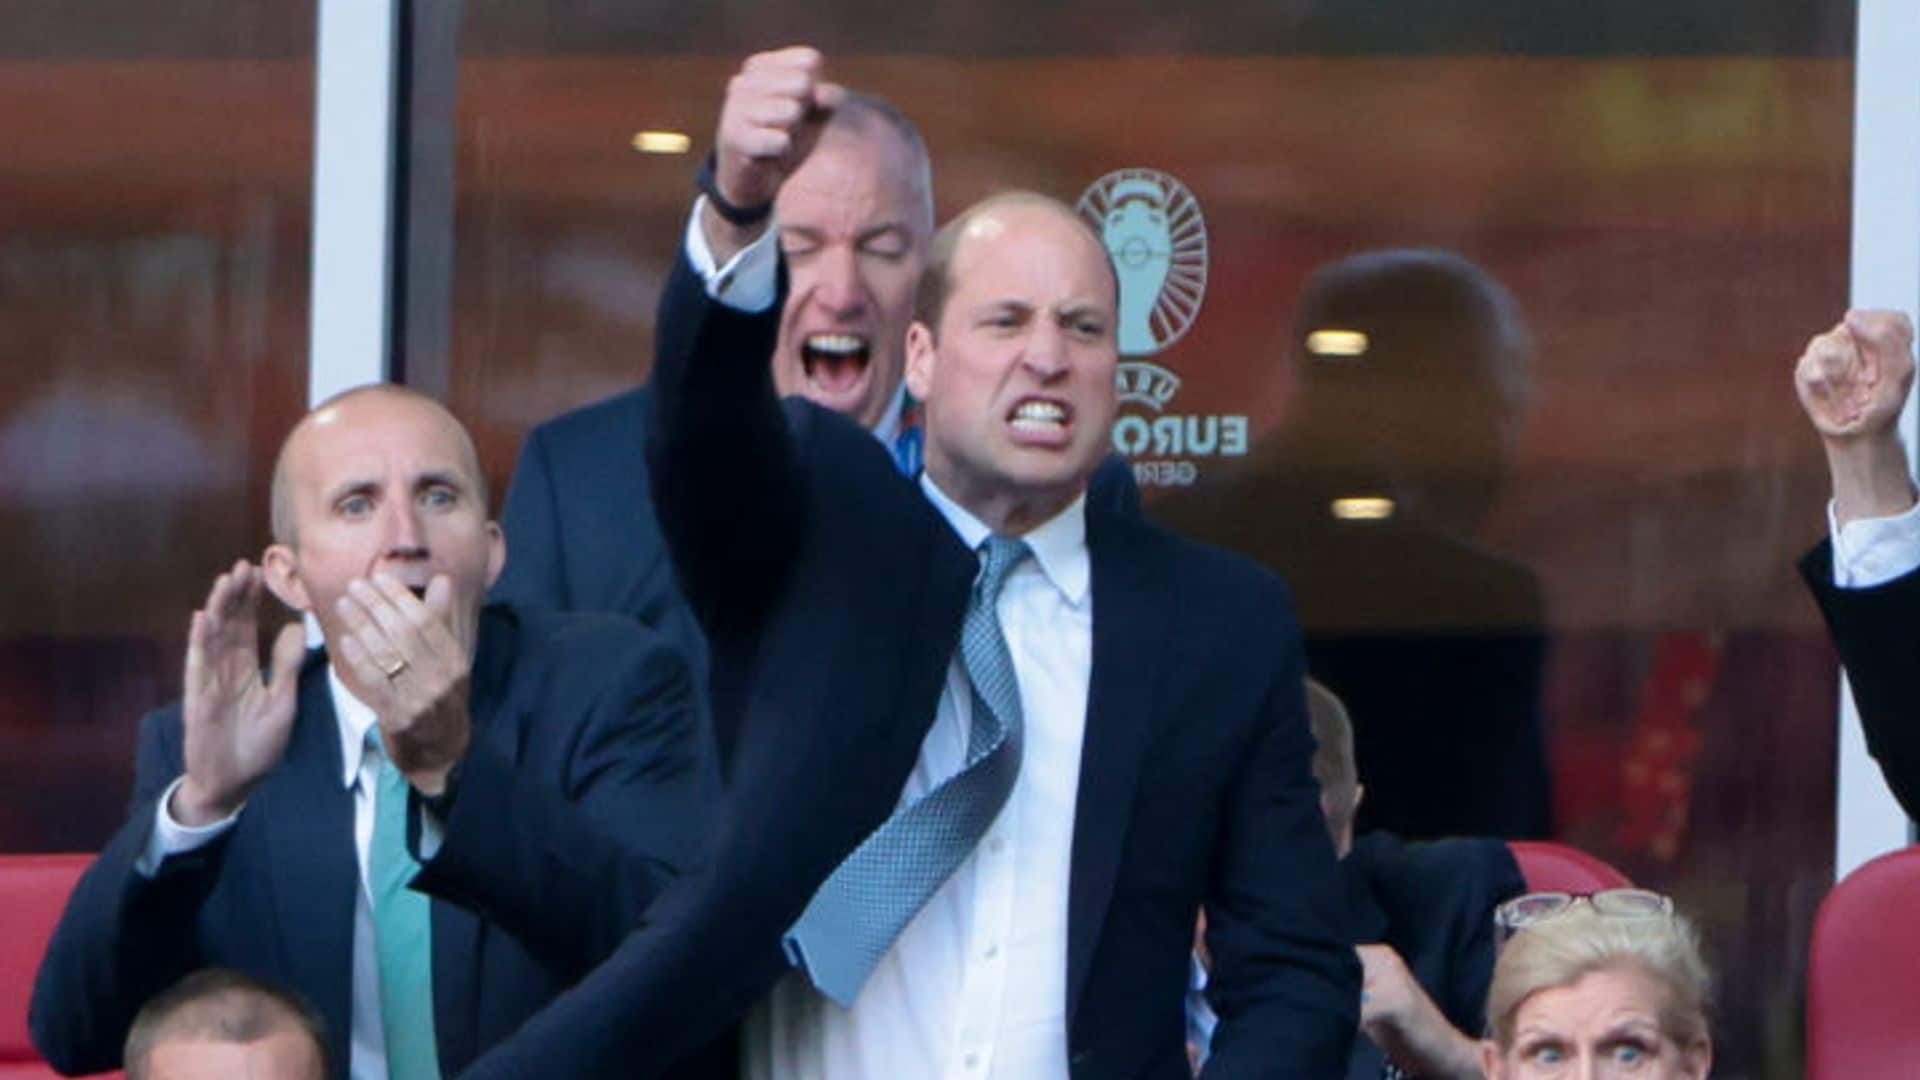 El príncipe William celebra el pase de Inglaterra a la final de la Eurocopa: '¡Qué belleza!'